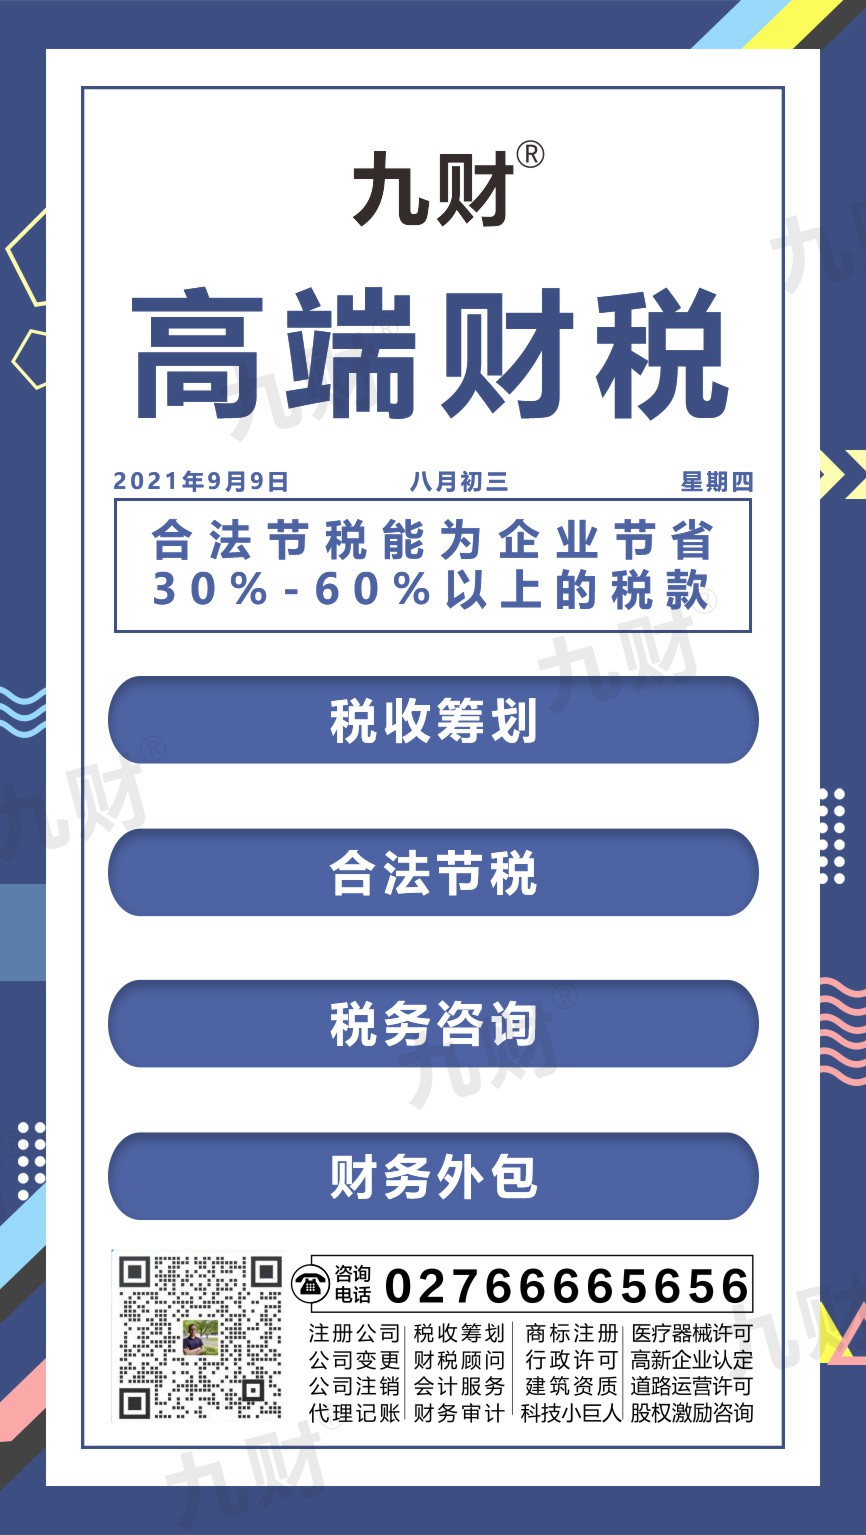 汉南区武昌股东变更网上如何填写申请表模板